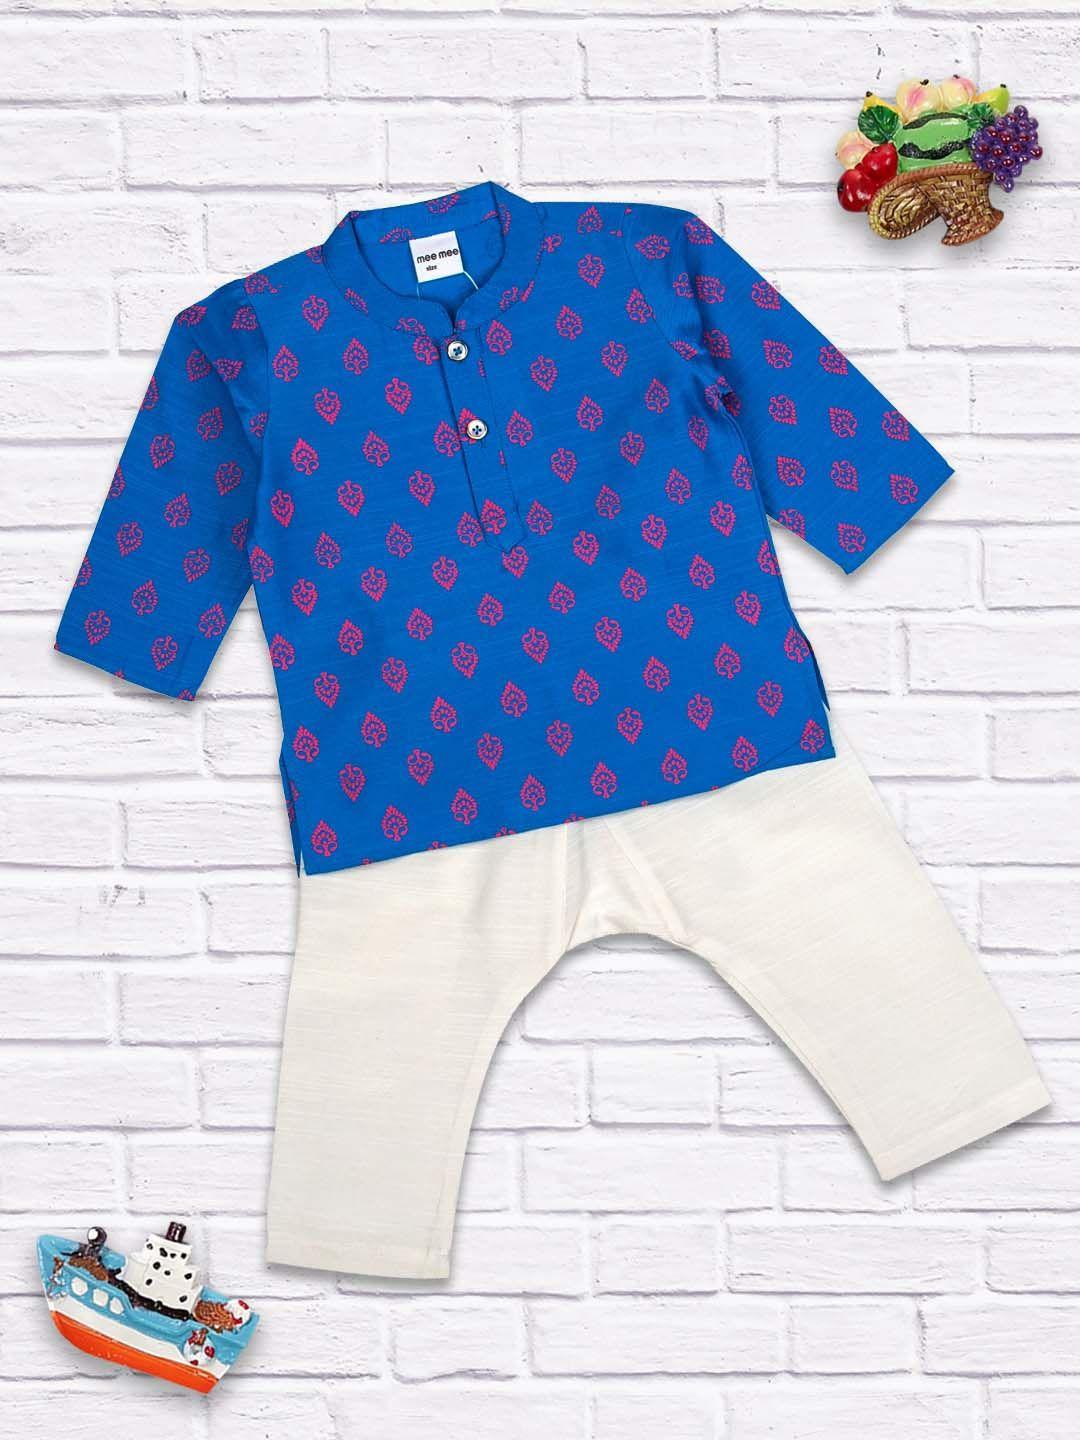 meemee boys blue & white printed winter kurta with pyjamas